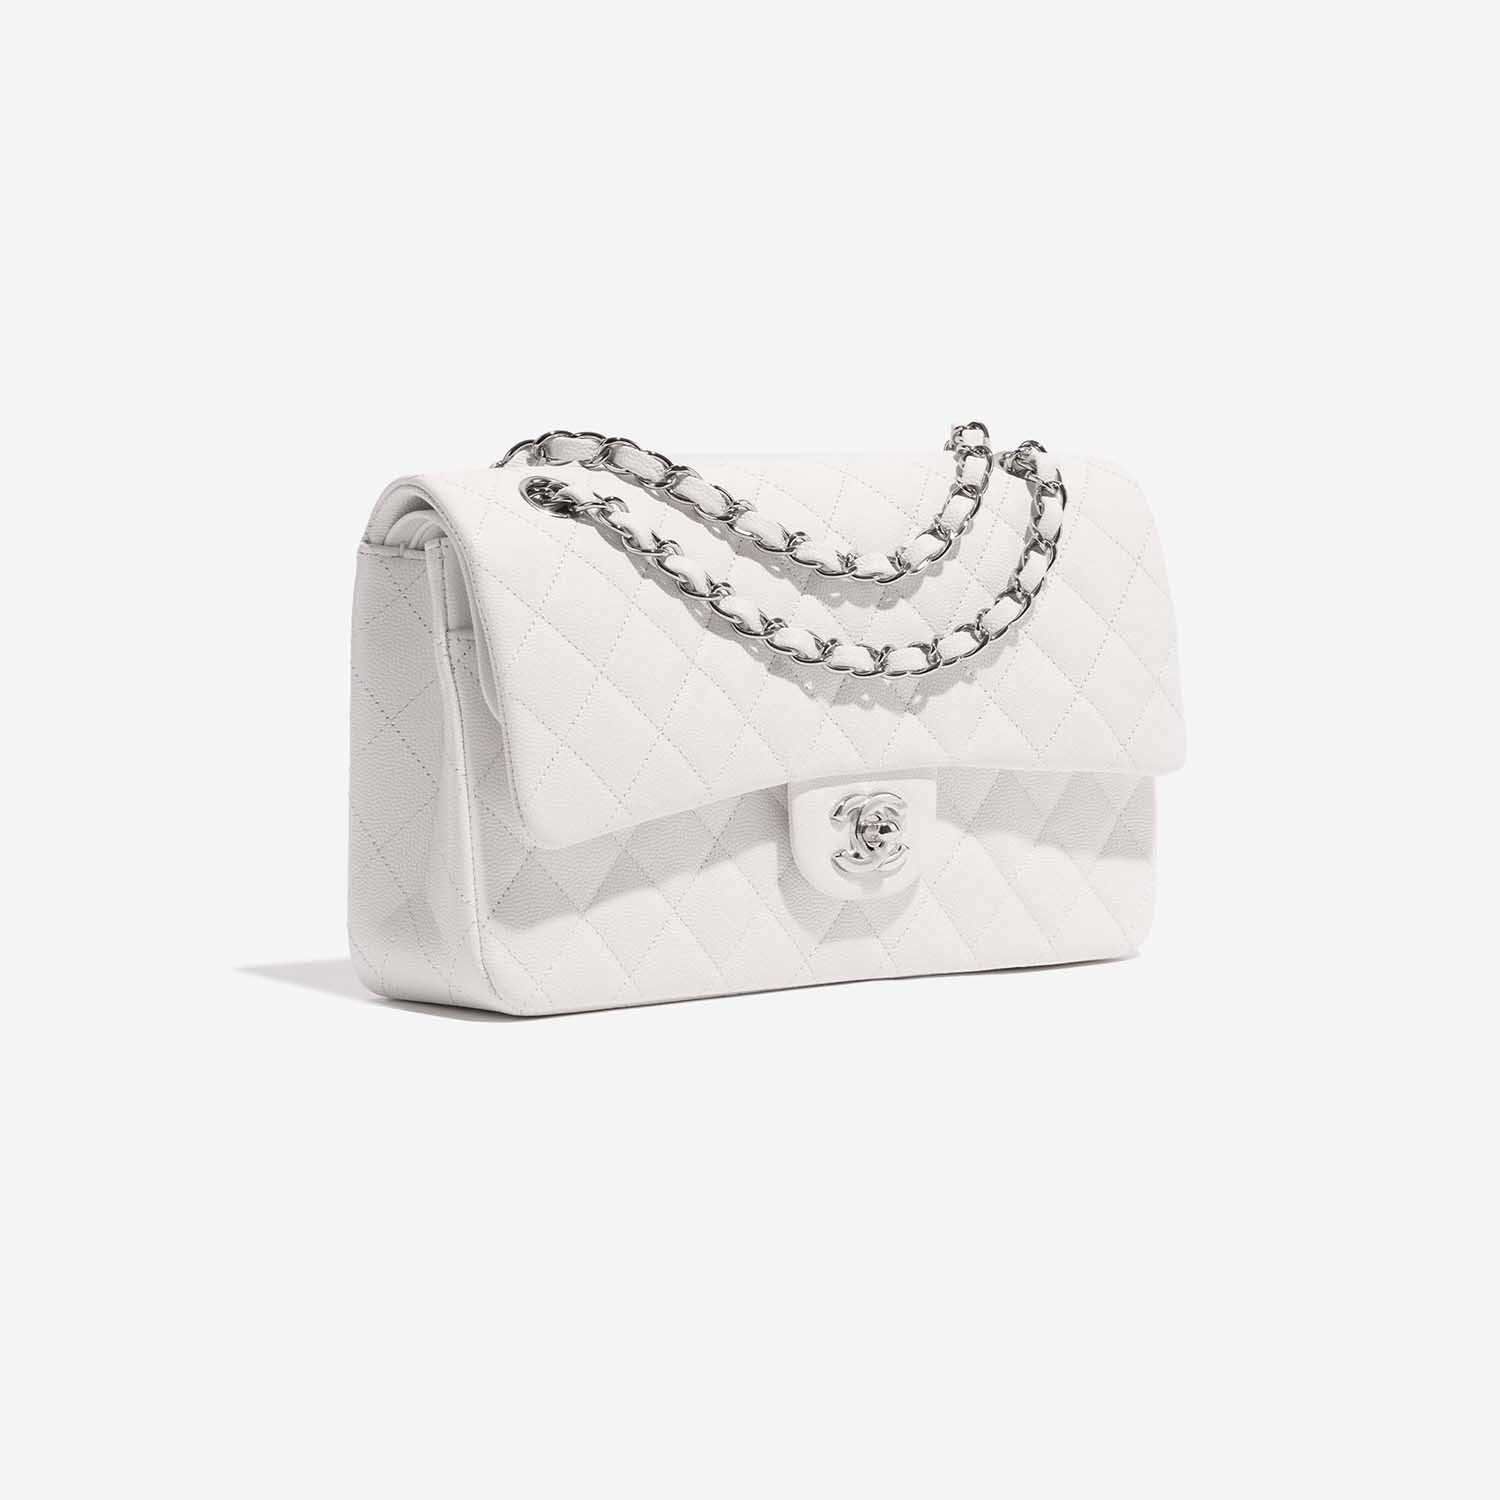 Chanel Timeless Medium White Side Front | Verkaufen Sie Ihre Designer-Tasche auf Saclab.com